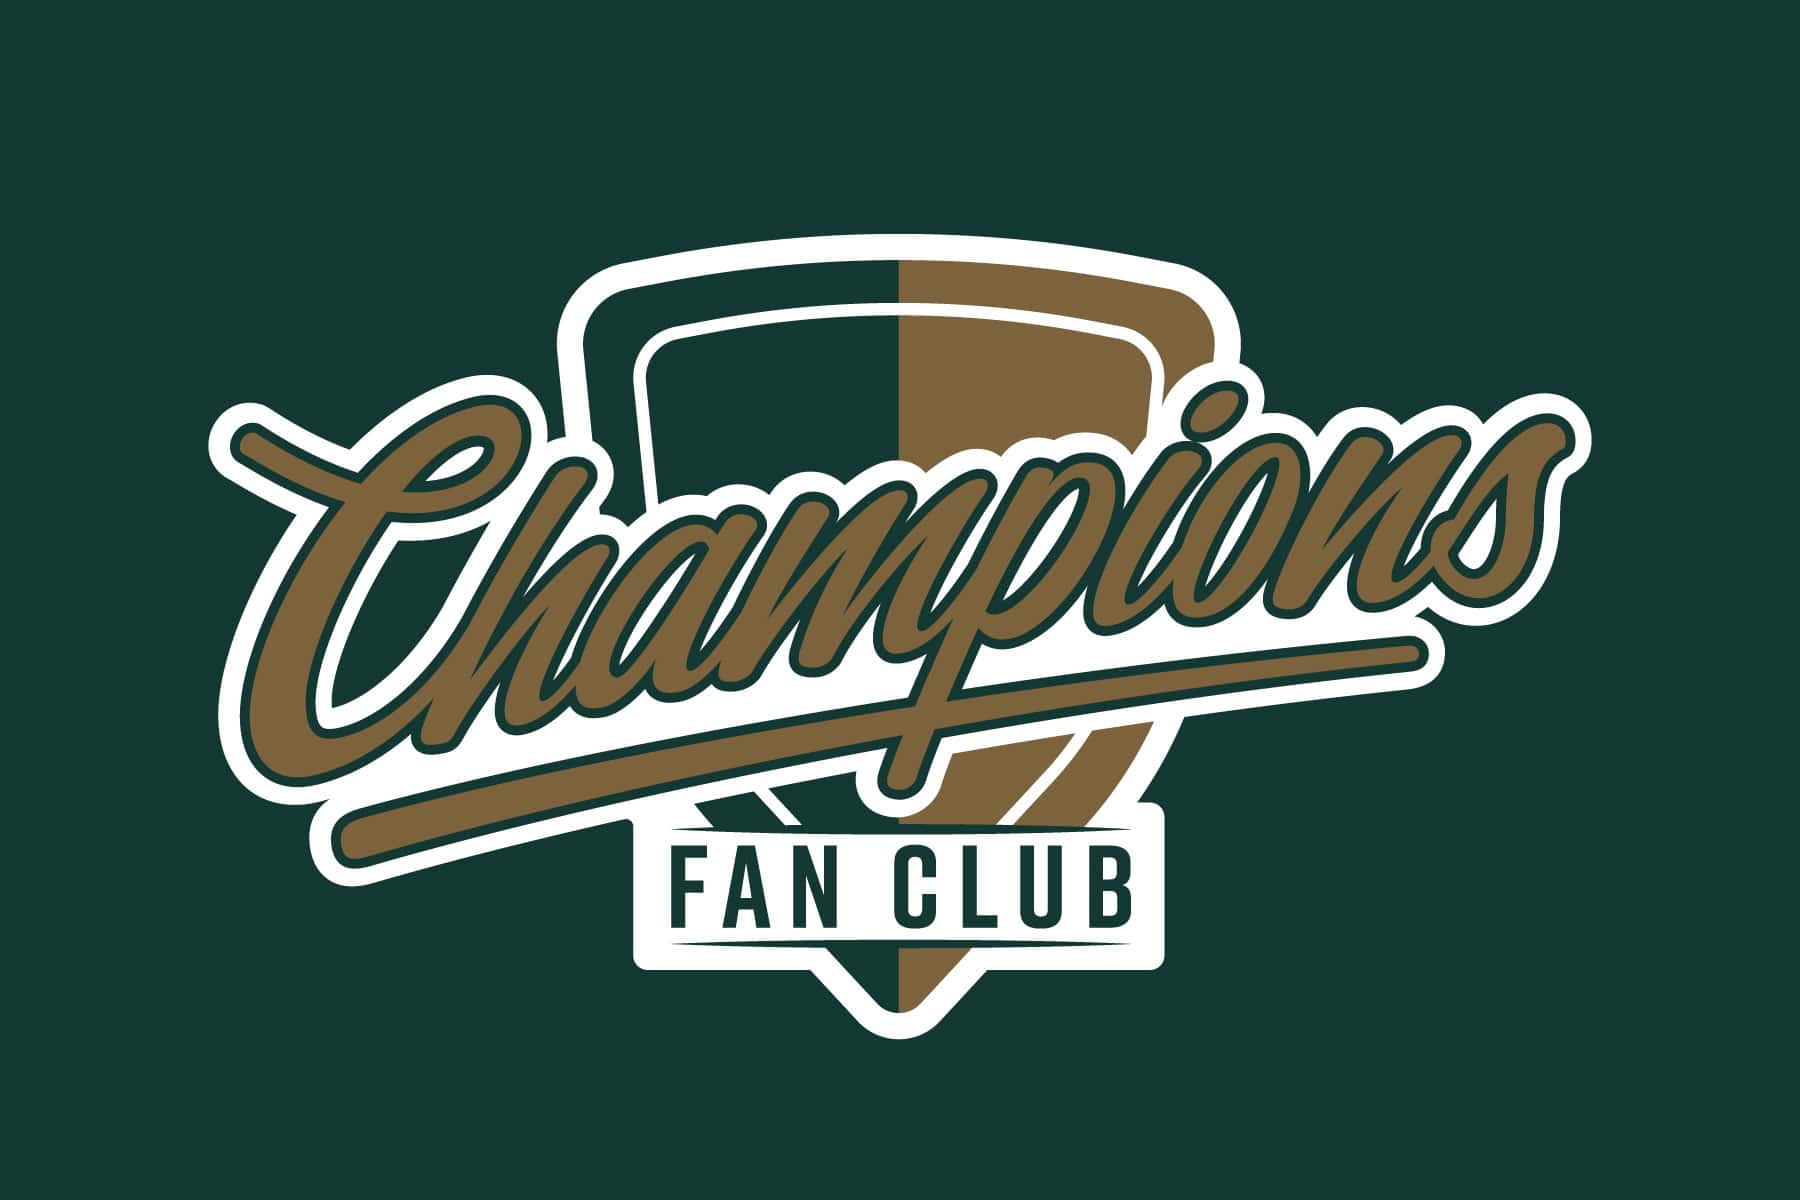 Champions Fan Club